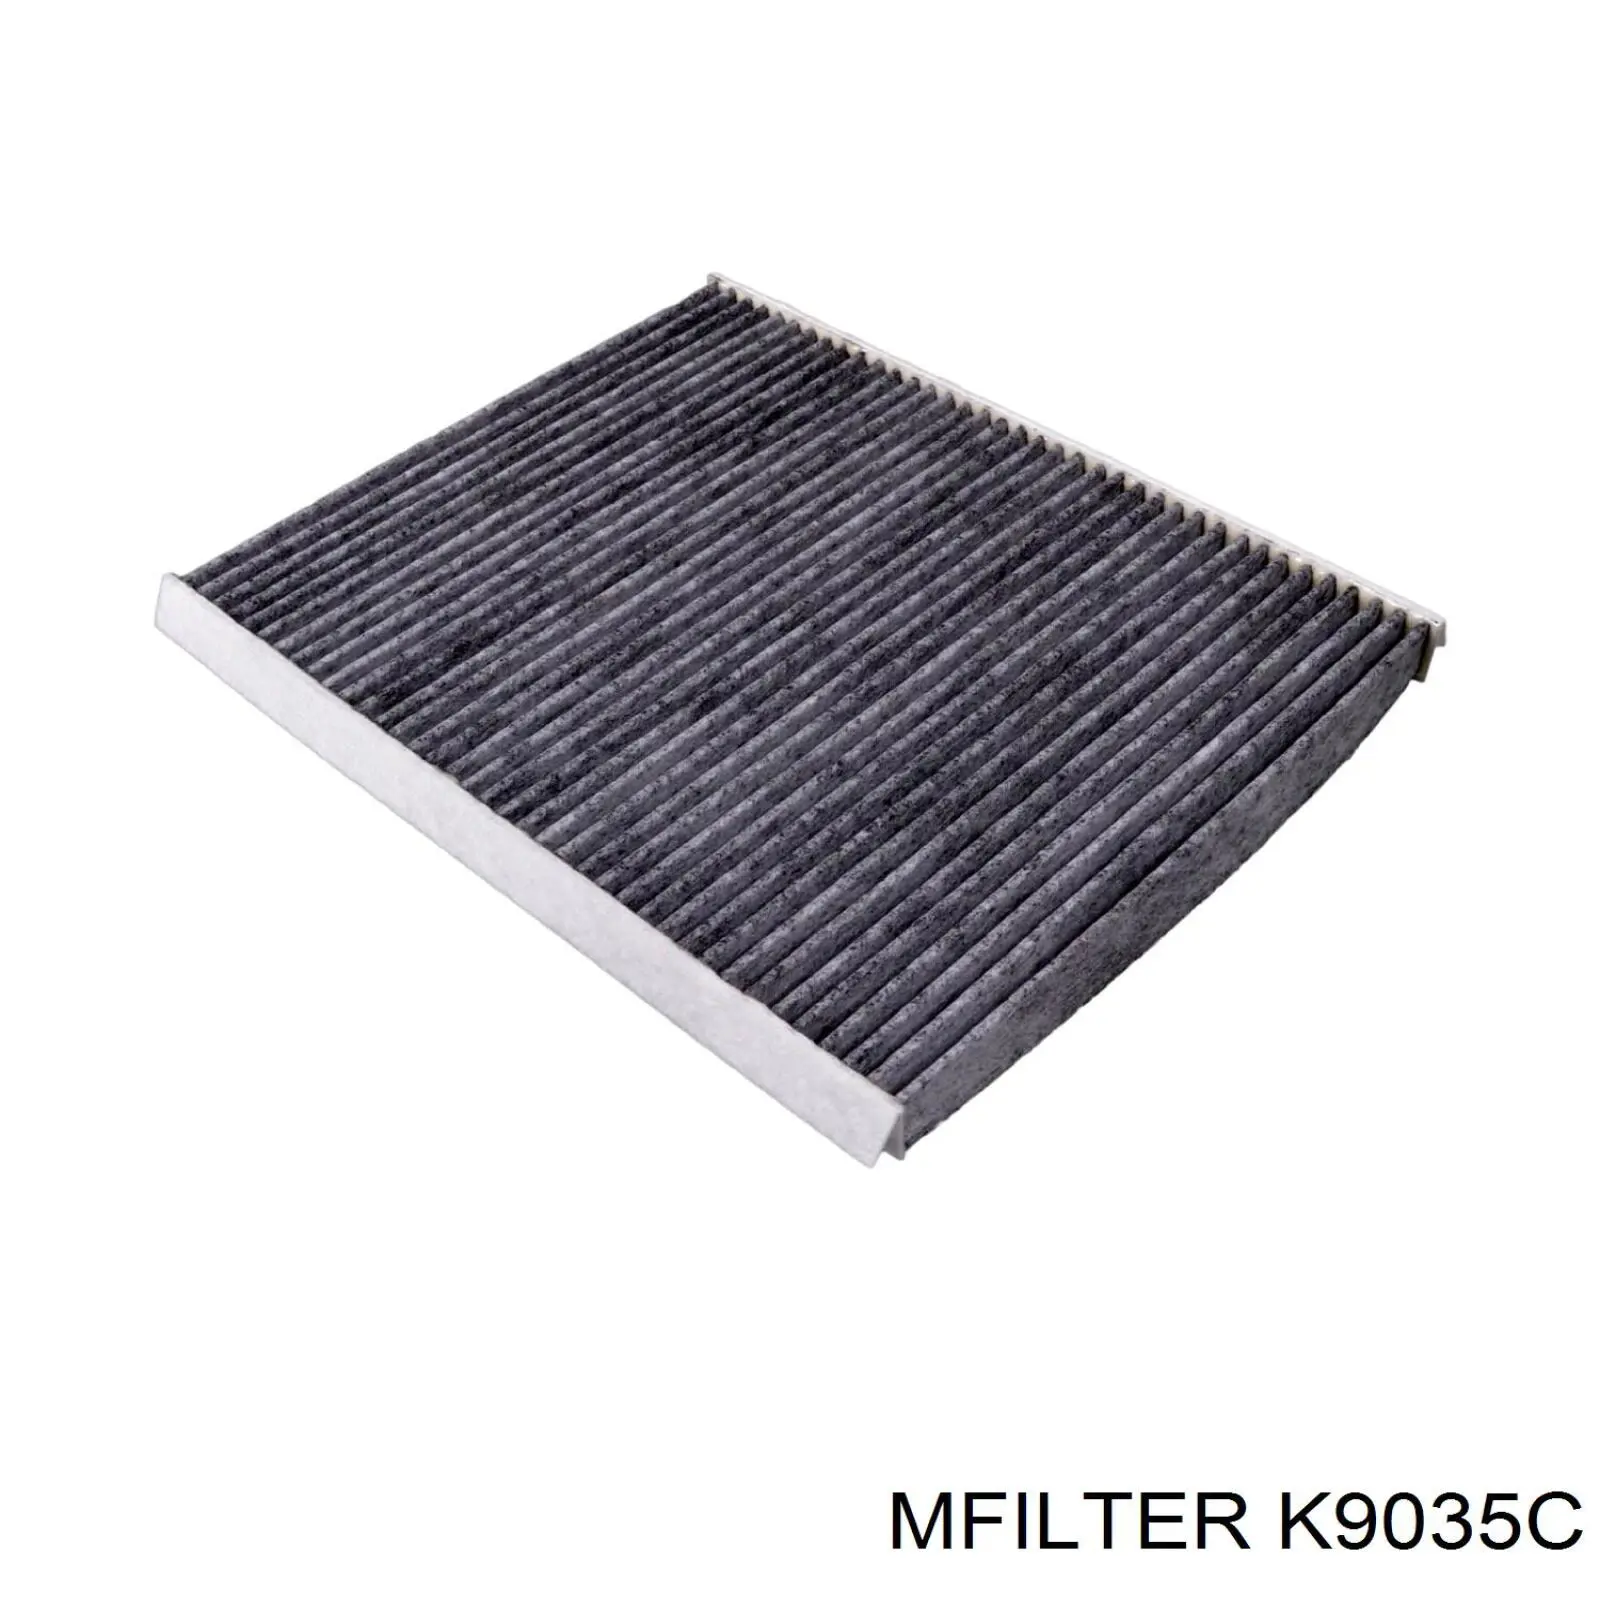 K9035C Mfilter filtro habitáculo